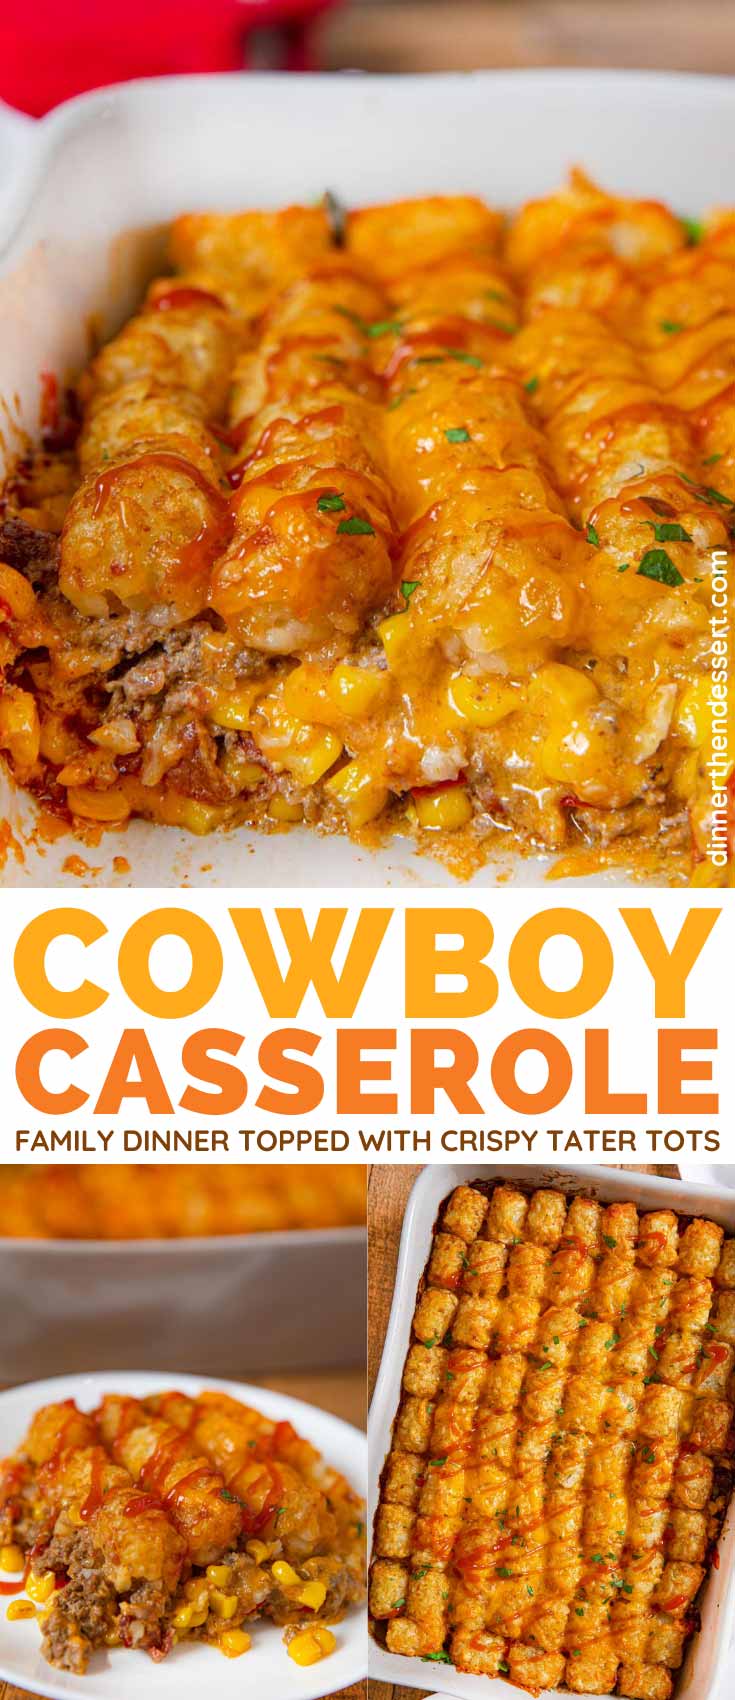 https://dinnerthendessert.com/wp-content/uploads/2020/01/Cowboy-Casserole-L.jpg